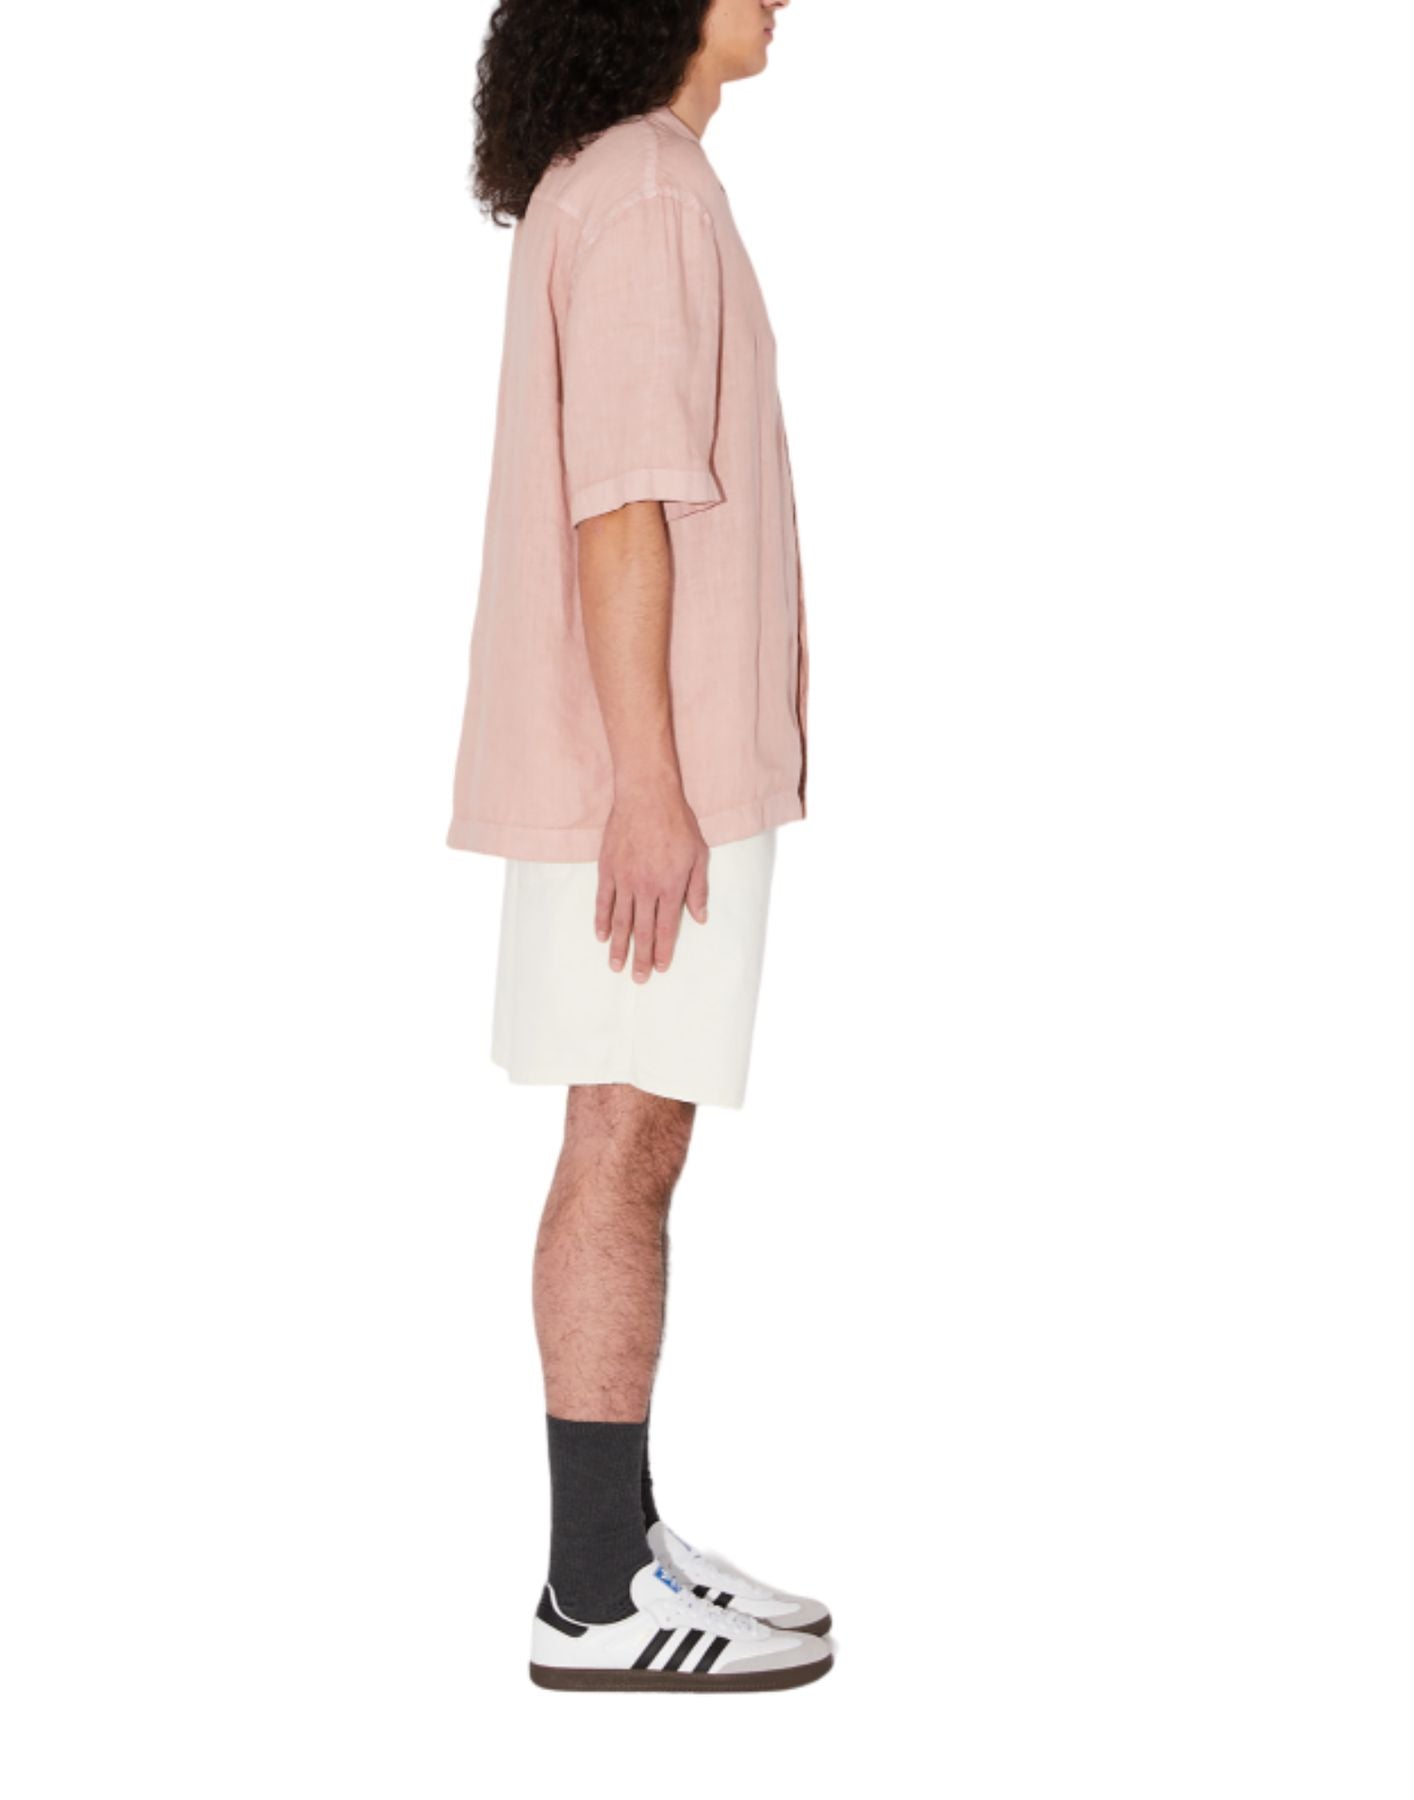 Camicia da uomo AMU110PA220569 grigio rosa Amish